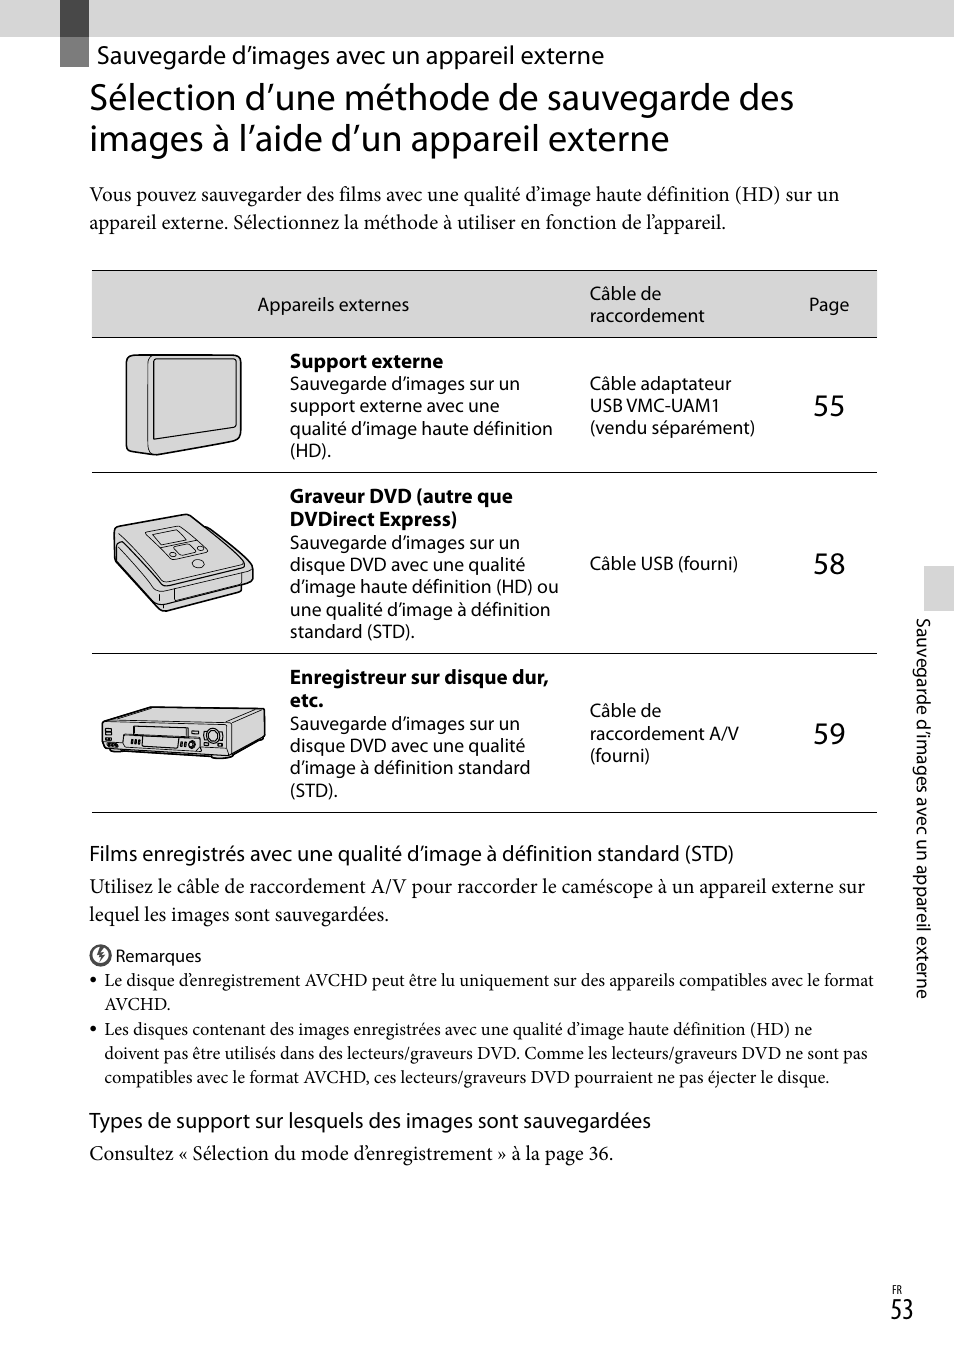 Sauvegarde d’images avec un appareil externe | Sony NEX-VG20H Manuel d'utilisation | Page 131 / 163